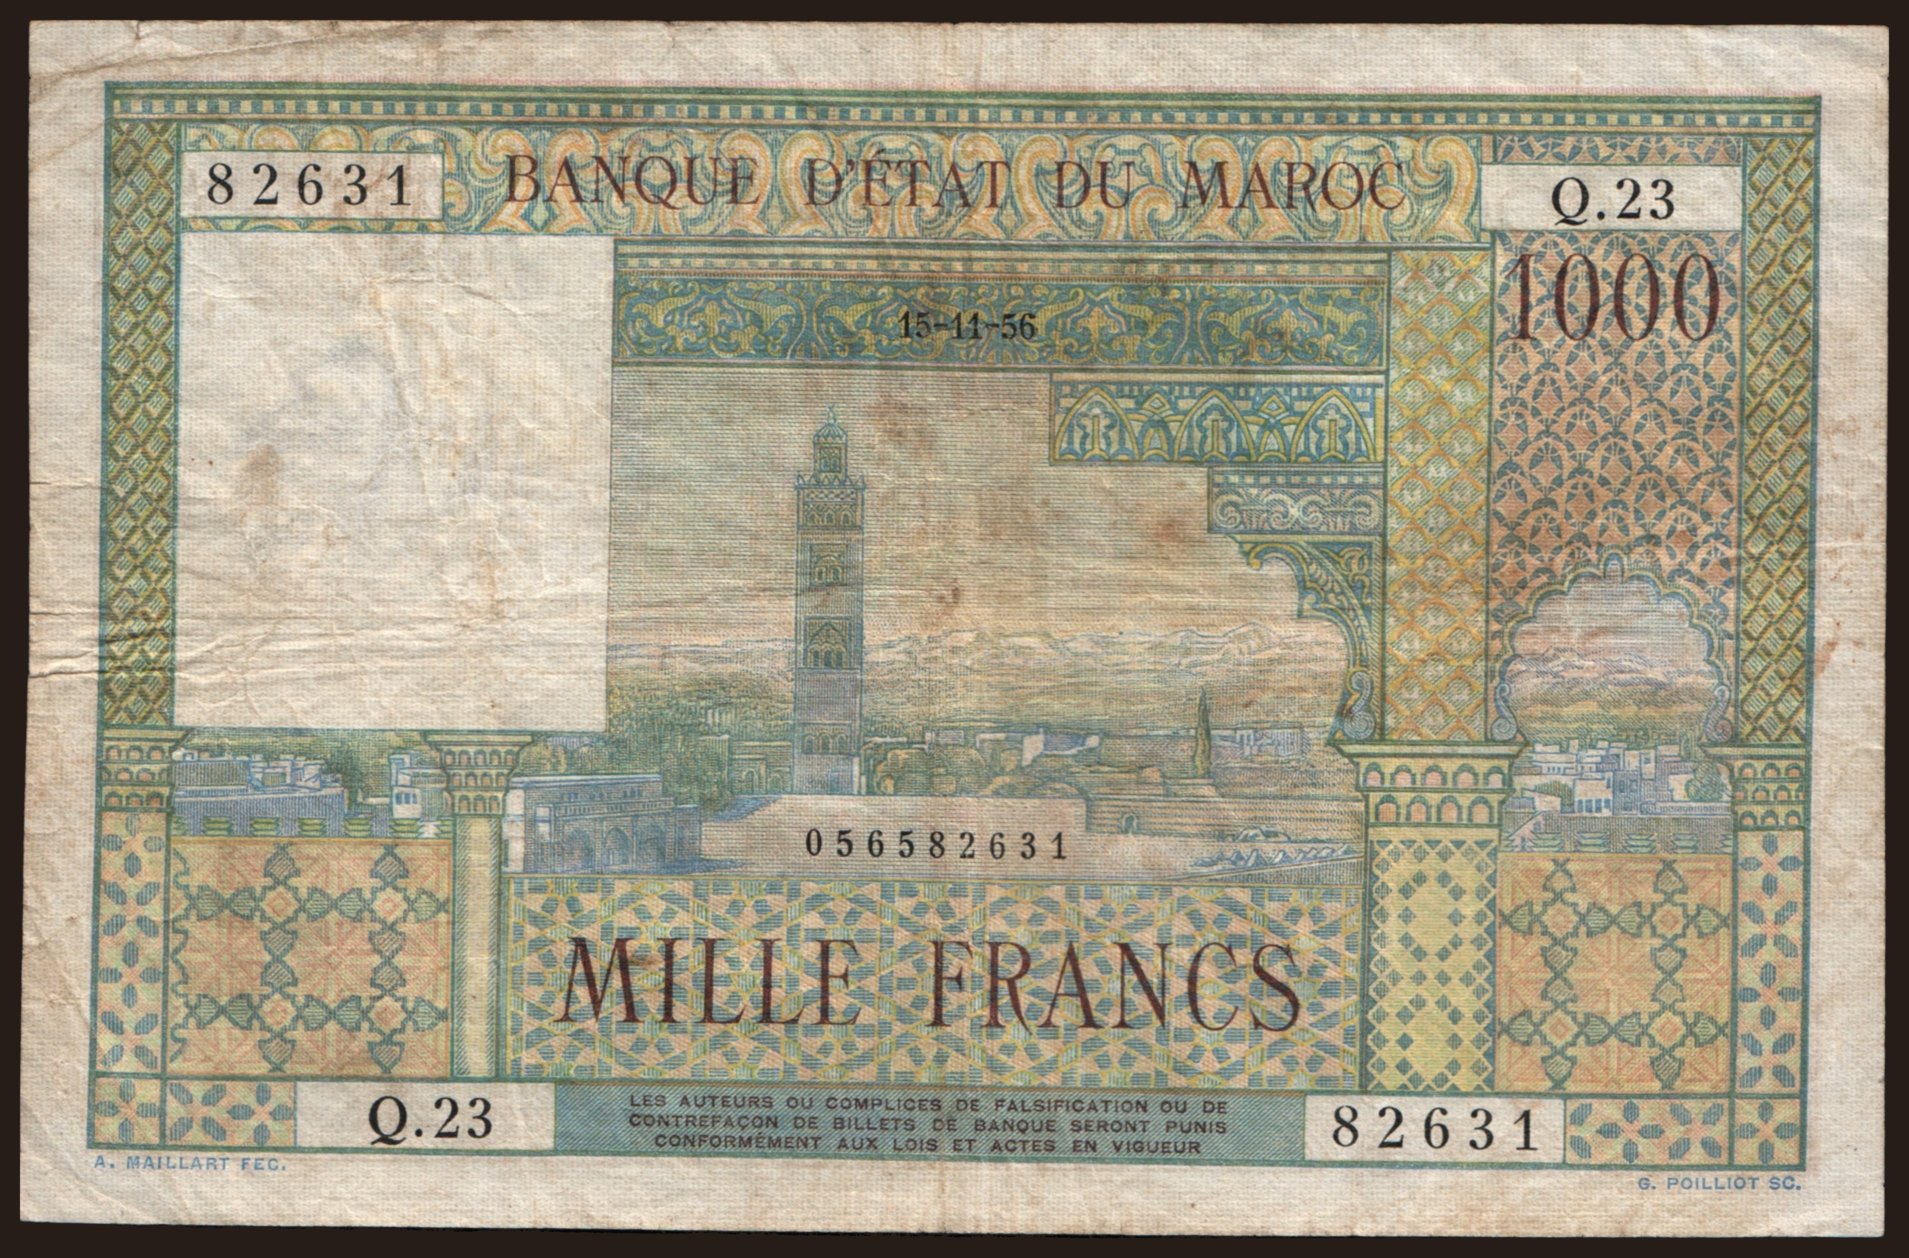 1000 francs, 1956